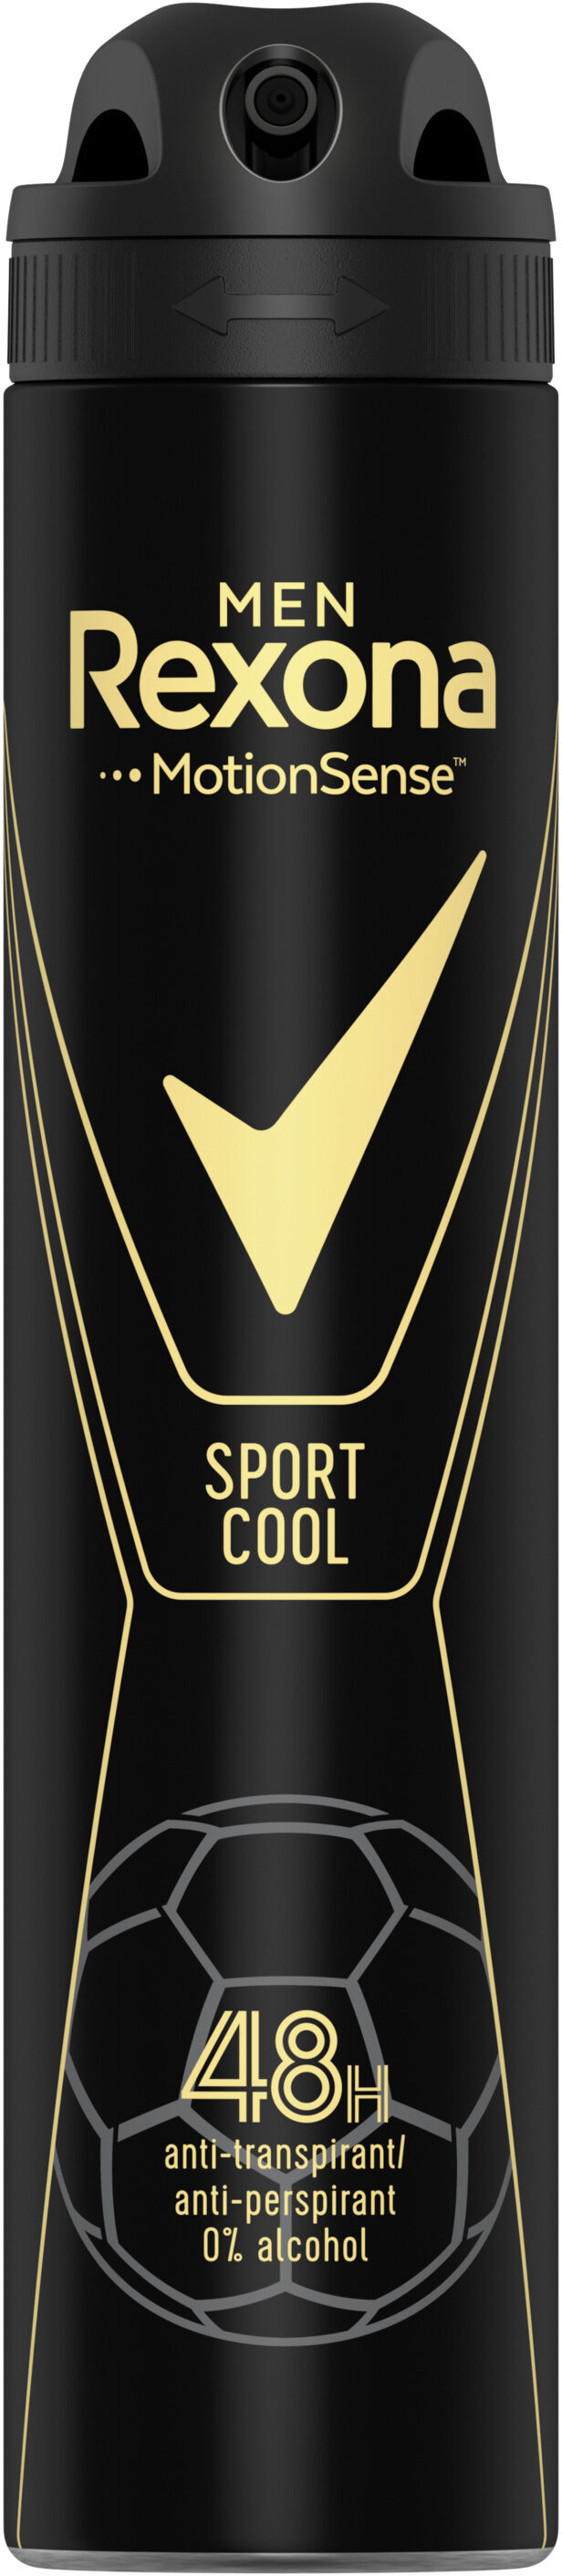 REXONA MEN Déodorant Homme Spray Anti-Transpirant Sport Cool 200ml - Produit - fr